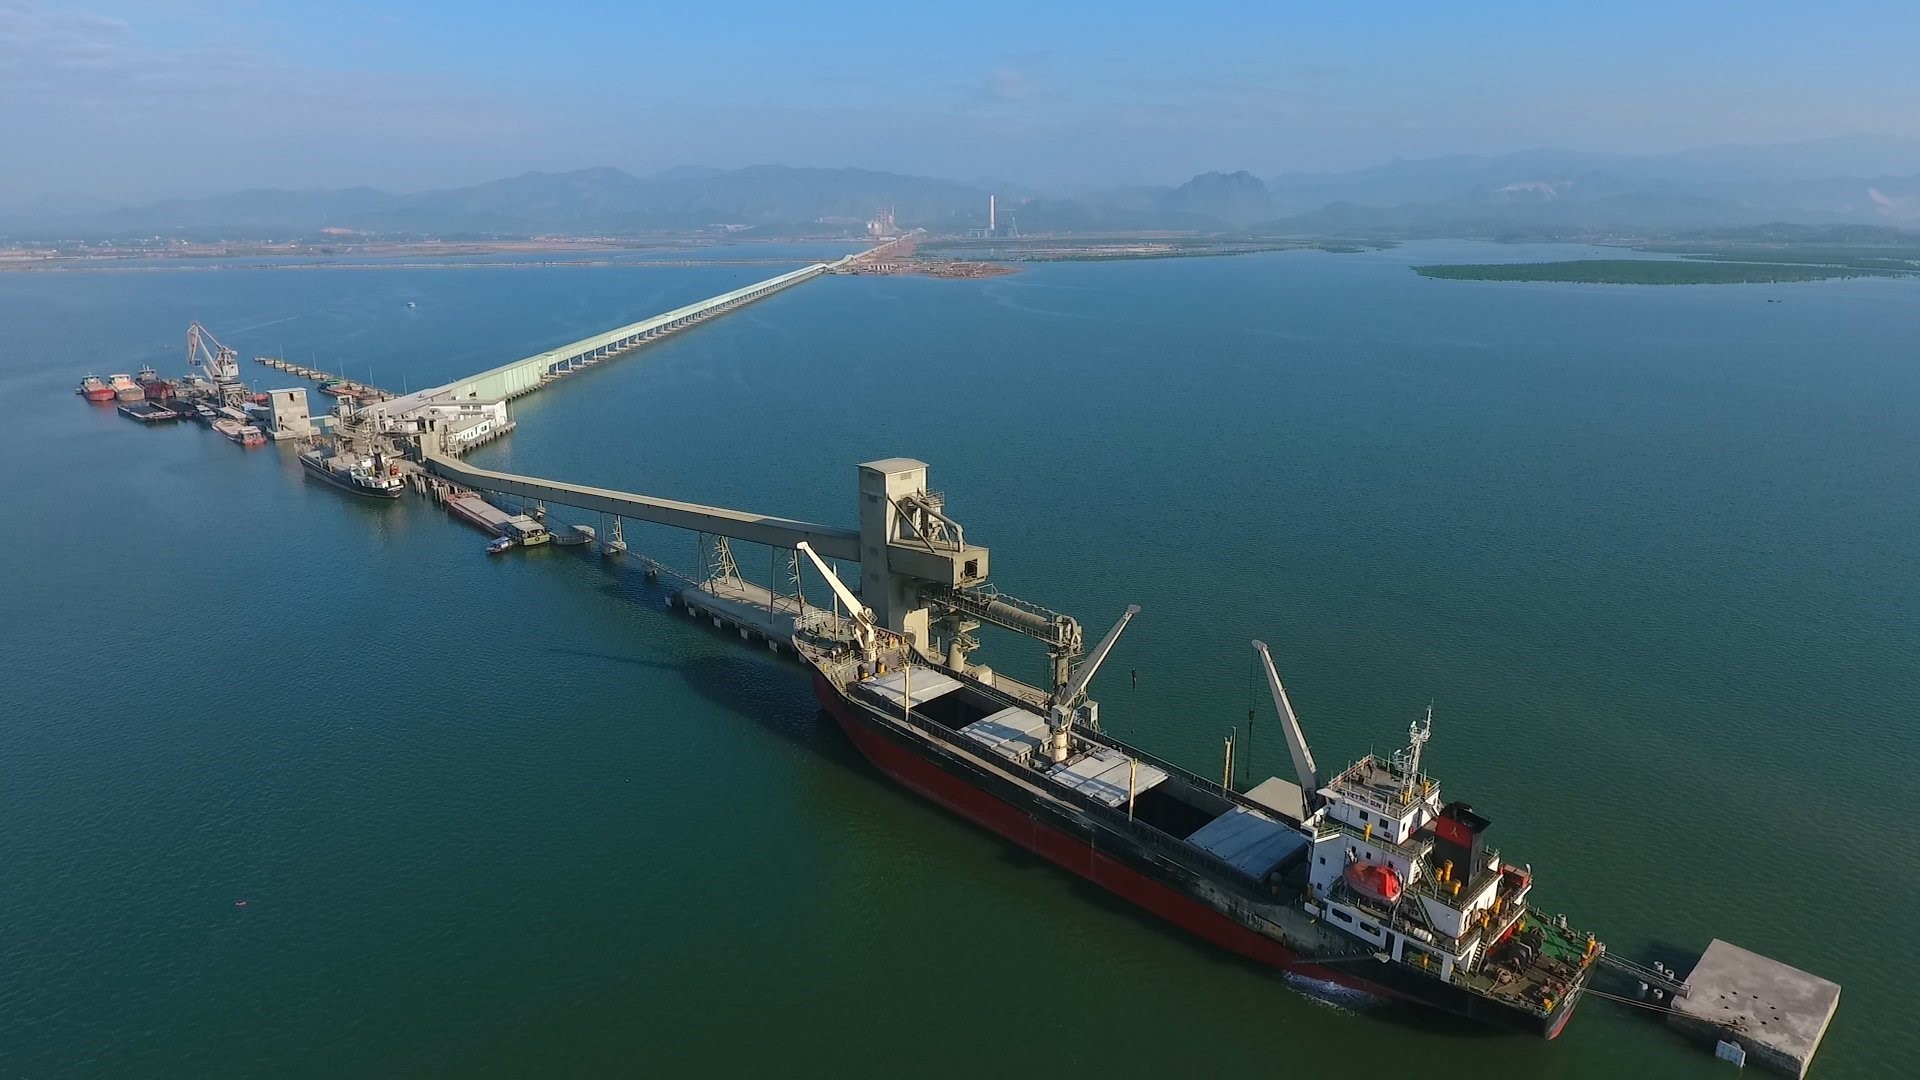 Đường băng tải dài hàng km vươn ra giữa vịnh Cửa Lục của một nhà máy xi măng bên bờ vịnh Cửa Lục. Ảnh: Nguyễn Hùng